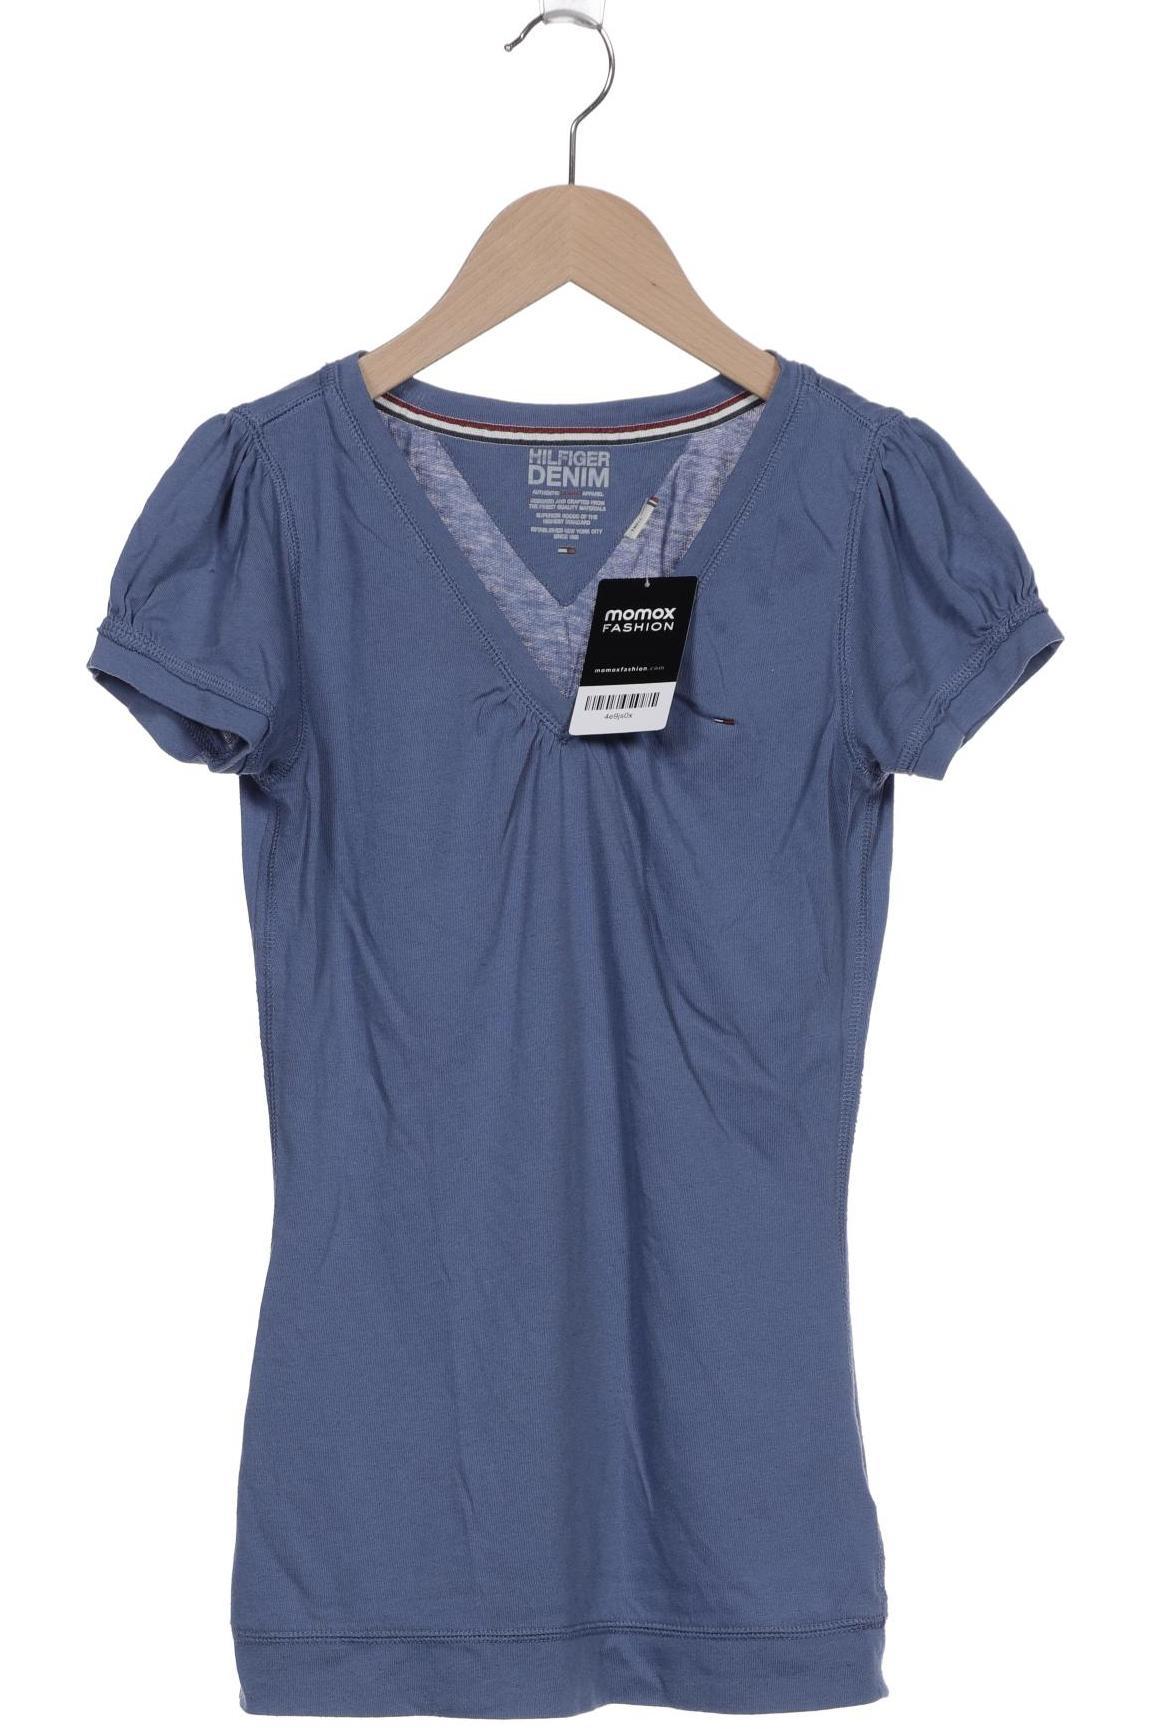 Hilfiger Denim Damen T-Shirt, blau, Gr. 36 von Hilfiger Denim